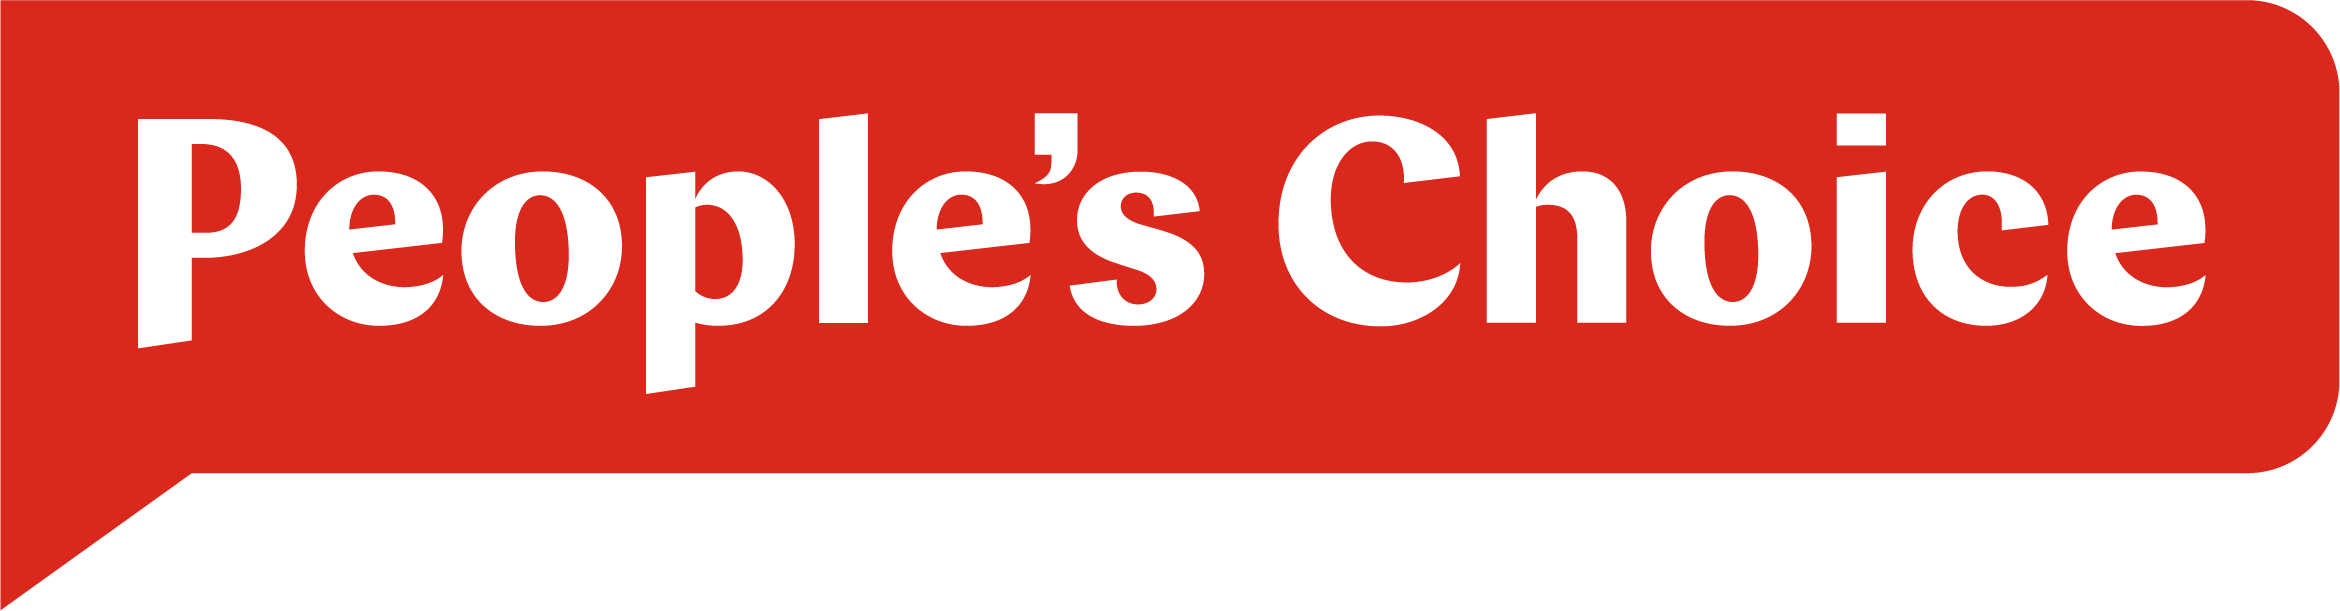 People's Choice logo